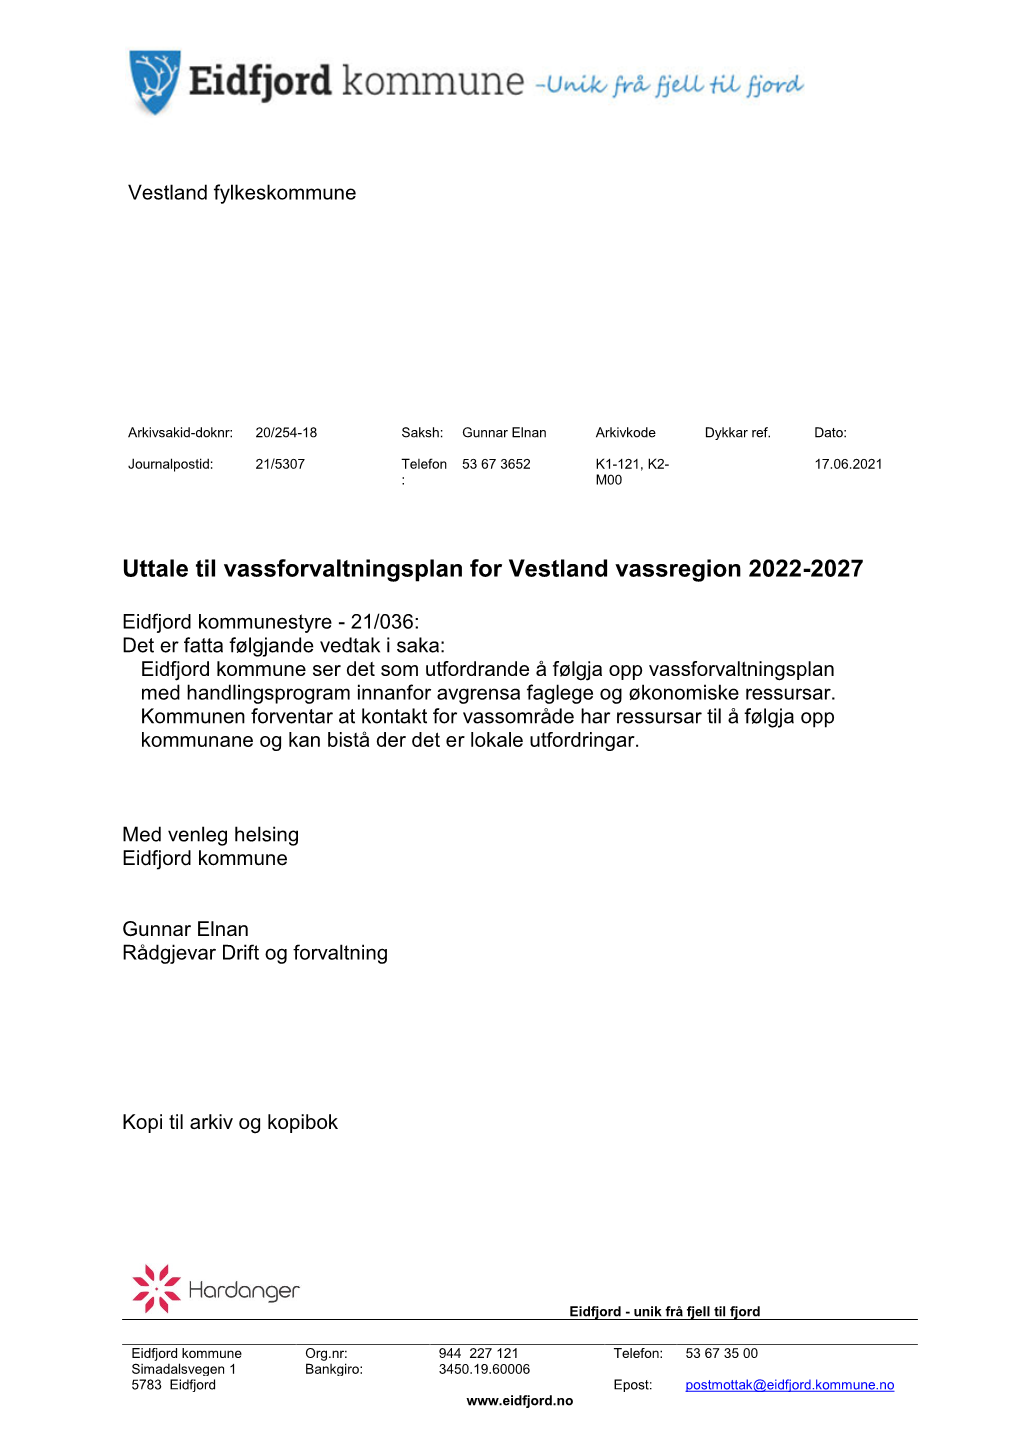 Uttale Til Vassforvaltningsplan for Vestland Vassregion 2022-2027